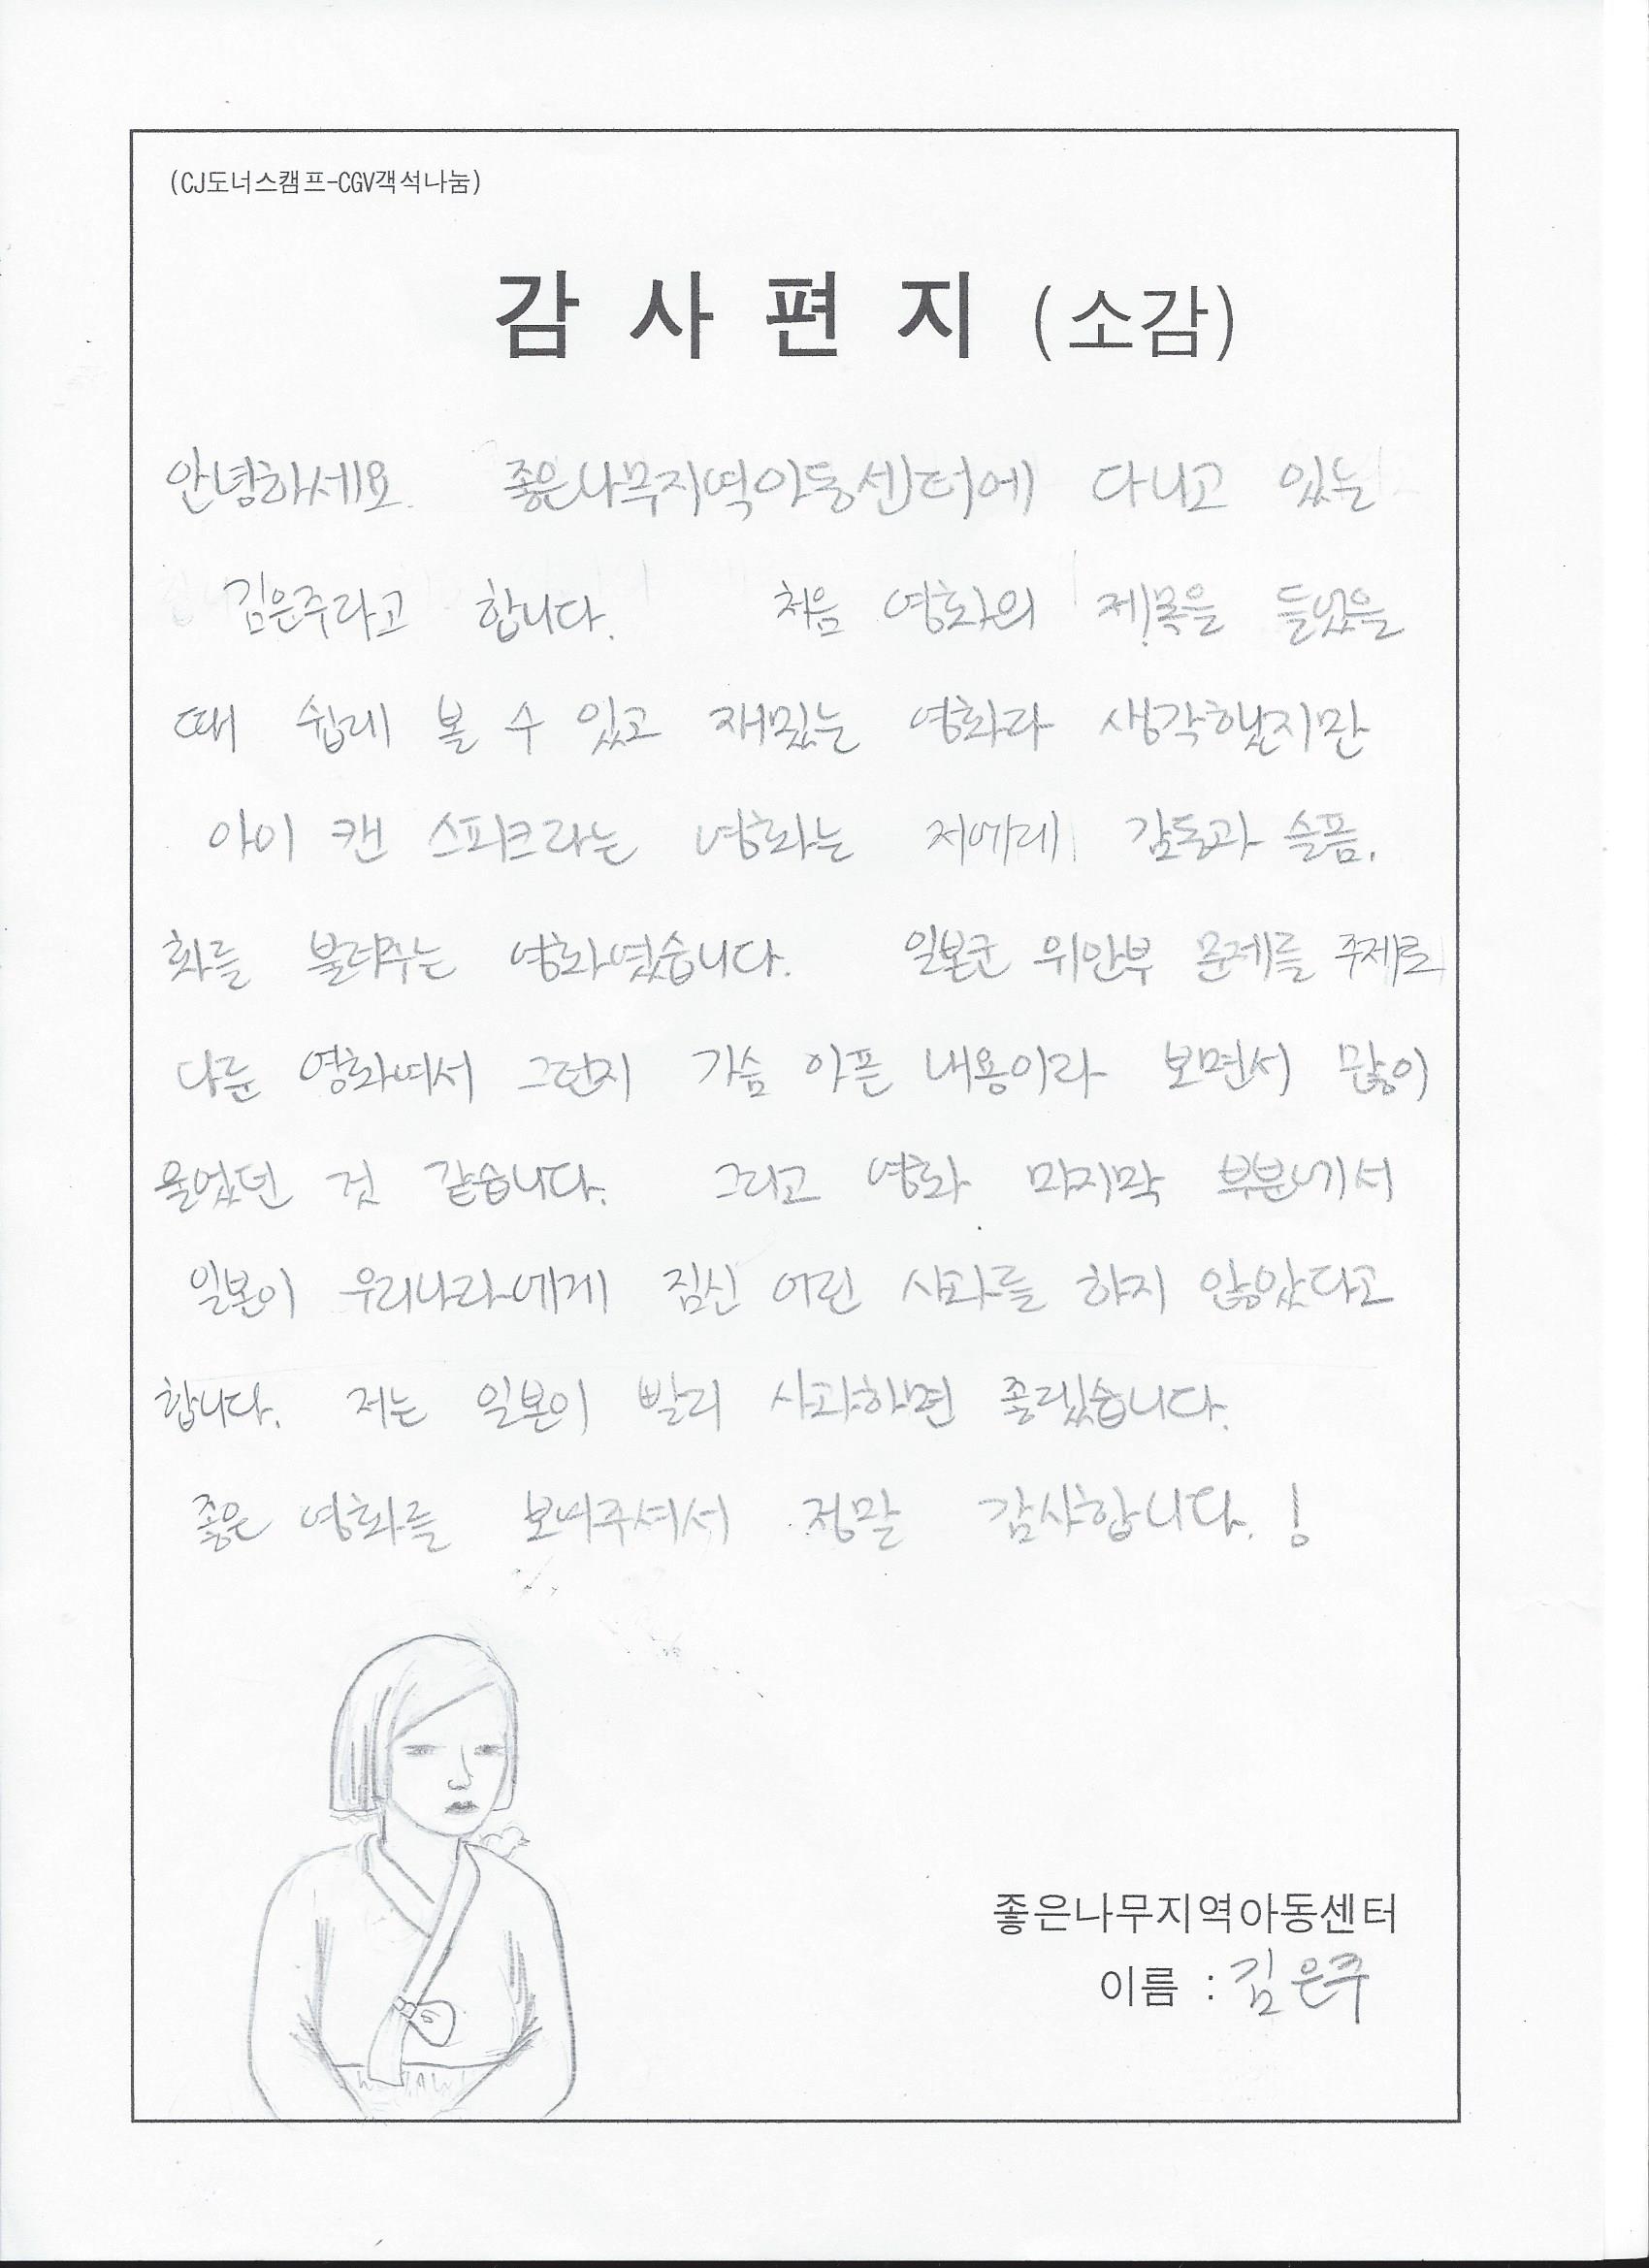 김은주 아동의 감사편지입니다.